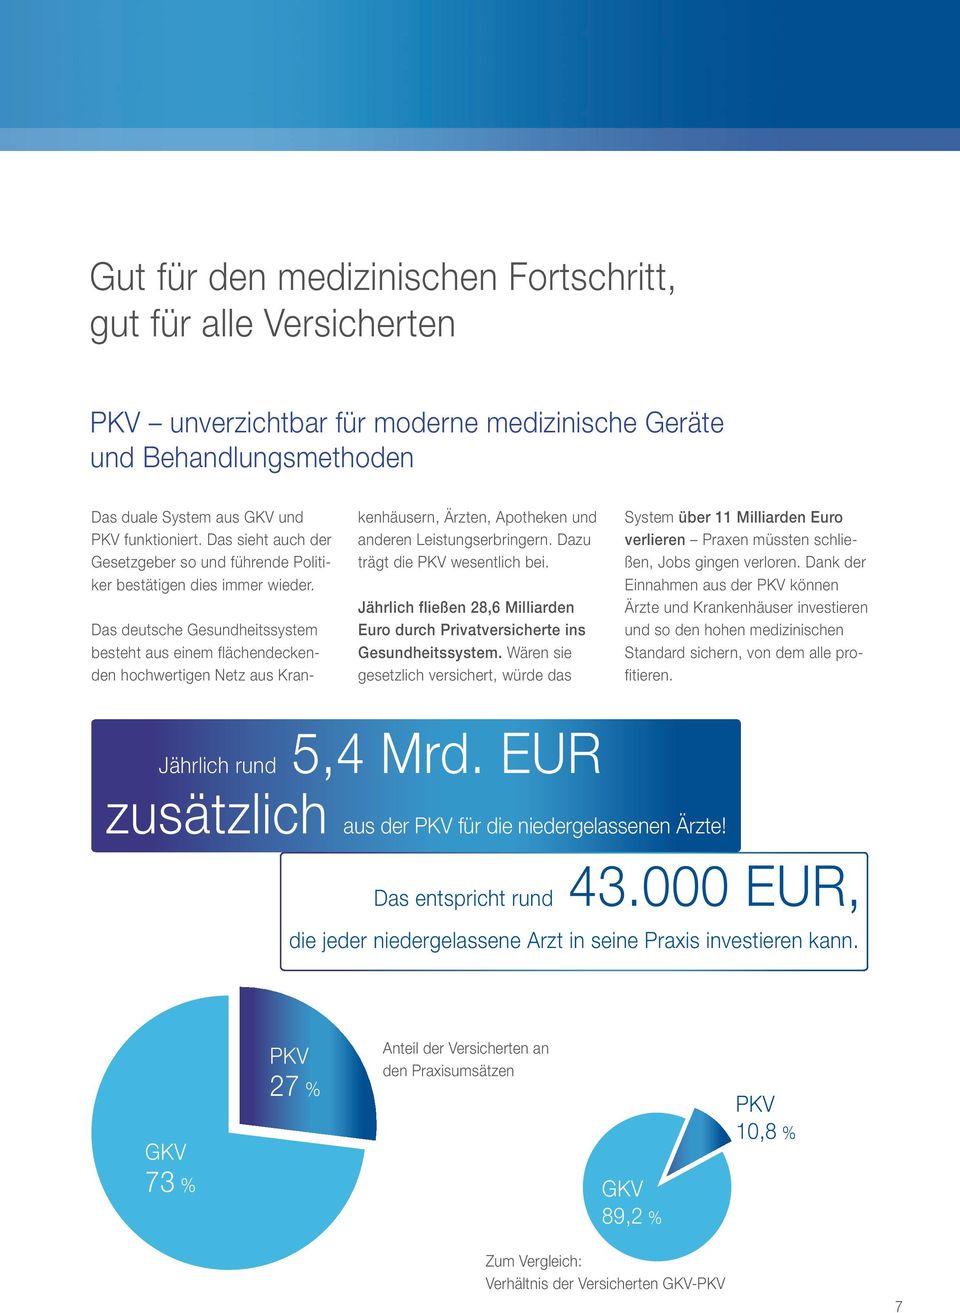 Das deutsche Gesundheitssystem besteht aus einem flächendeckenden hochwertigen Netz aus Kran- kenhäusern, Ärzten, Apotheken und anderen Leistungserbringern. Dazu trägt die PKV wesentlich bei.